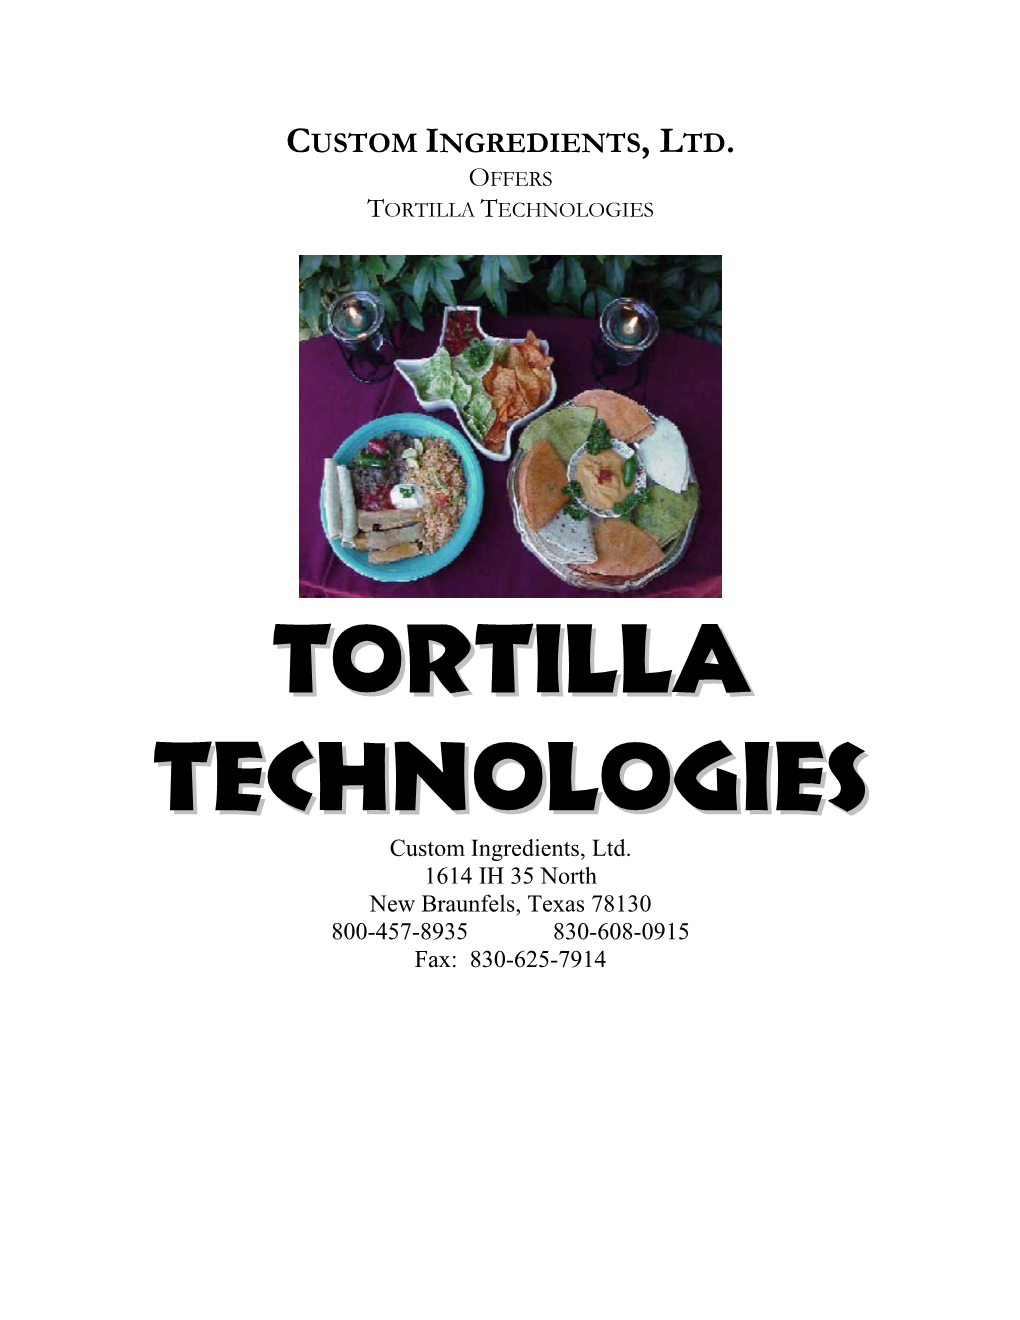 Tortilla Technology